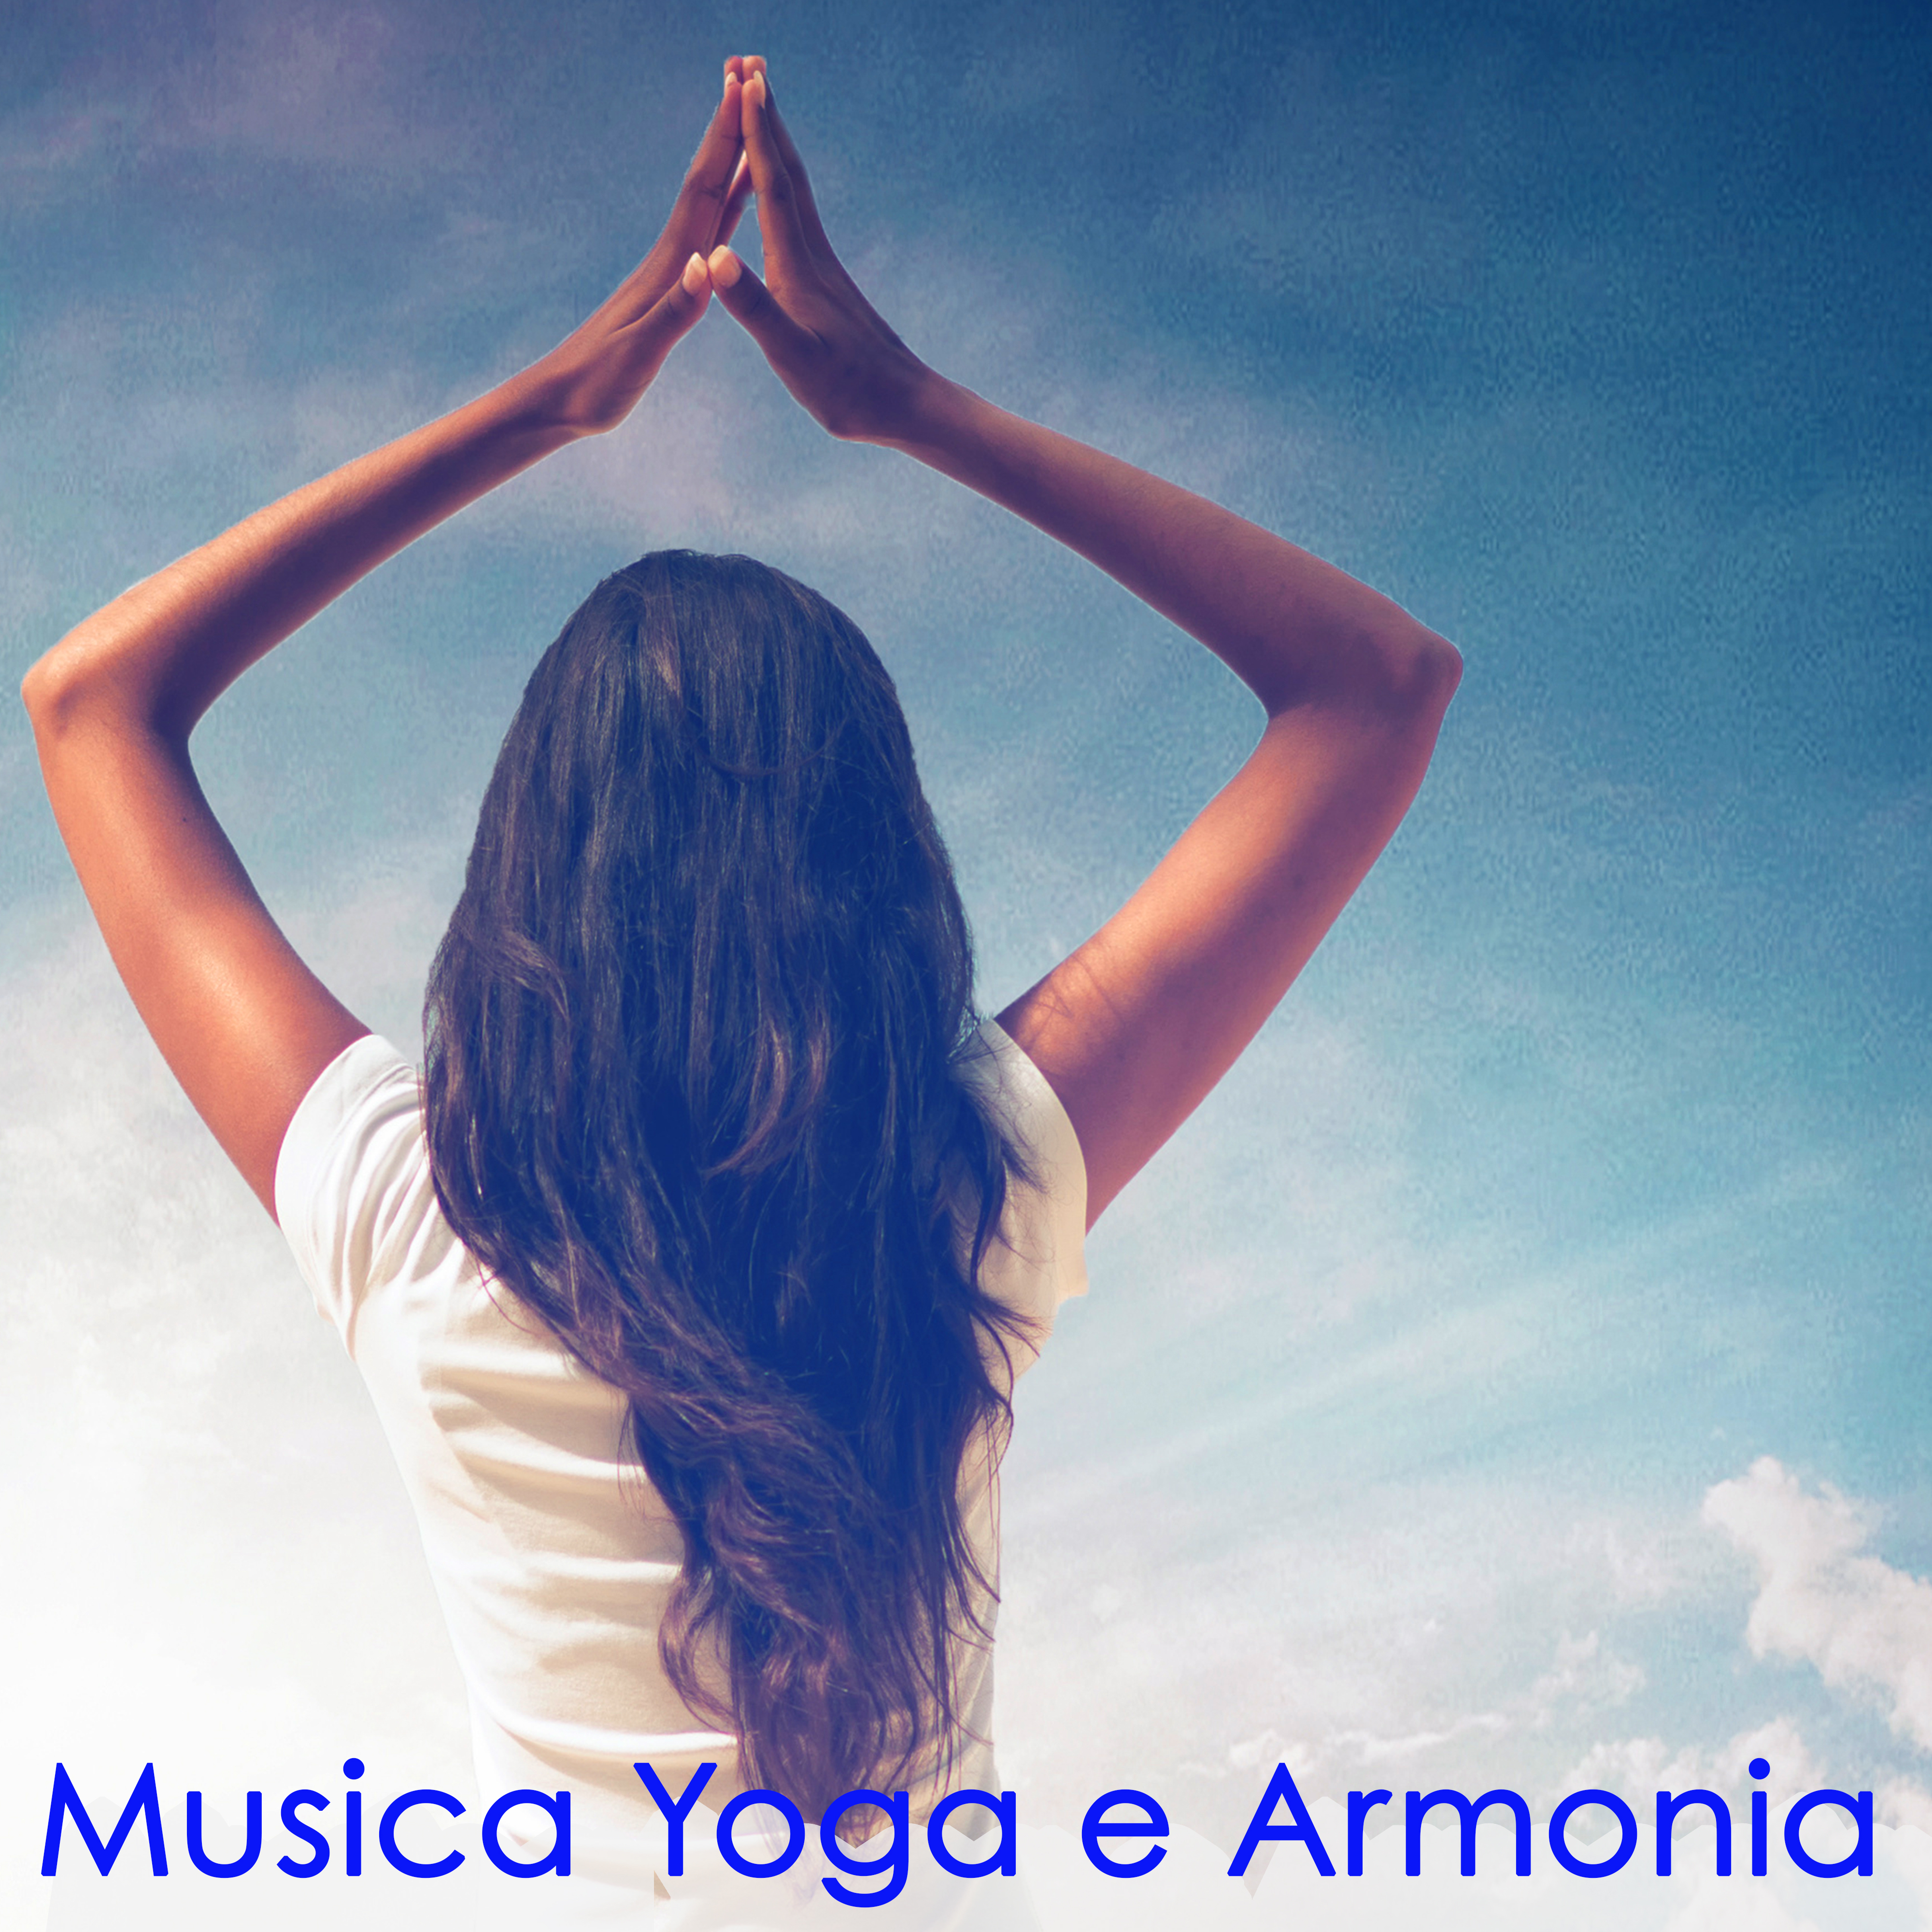 Musica Yoga e Armonia – Musica Zen Rilassante per Yoga con Flauto, Koto, Hang Drum e Suoni della Natura